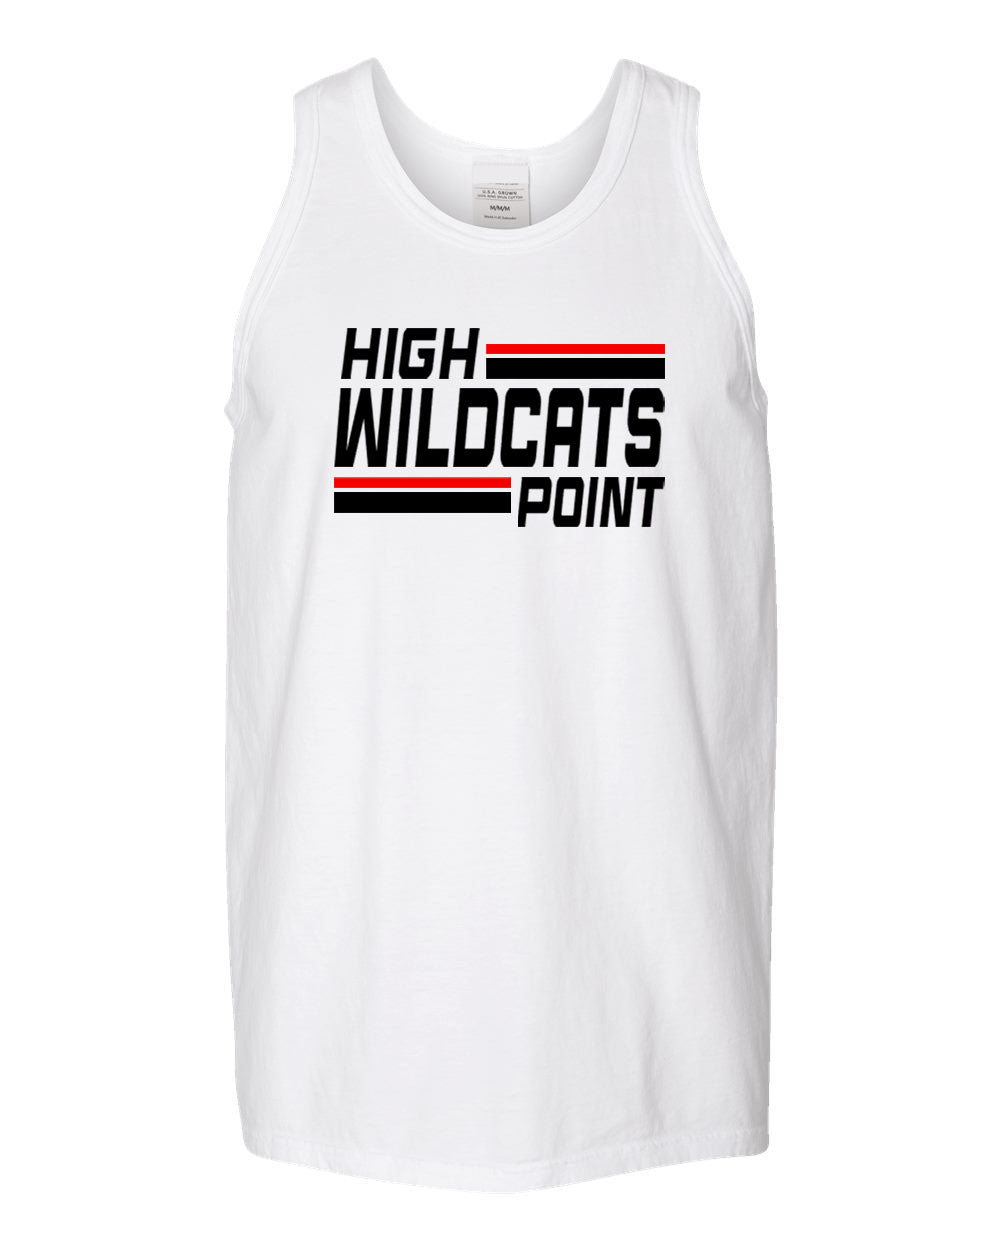 Wildcats Cheer design 4 Ladies Muscle Tank Top